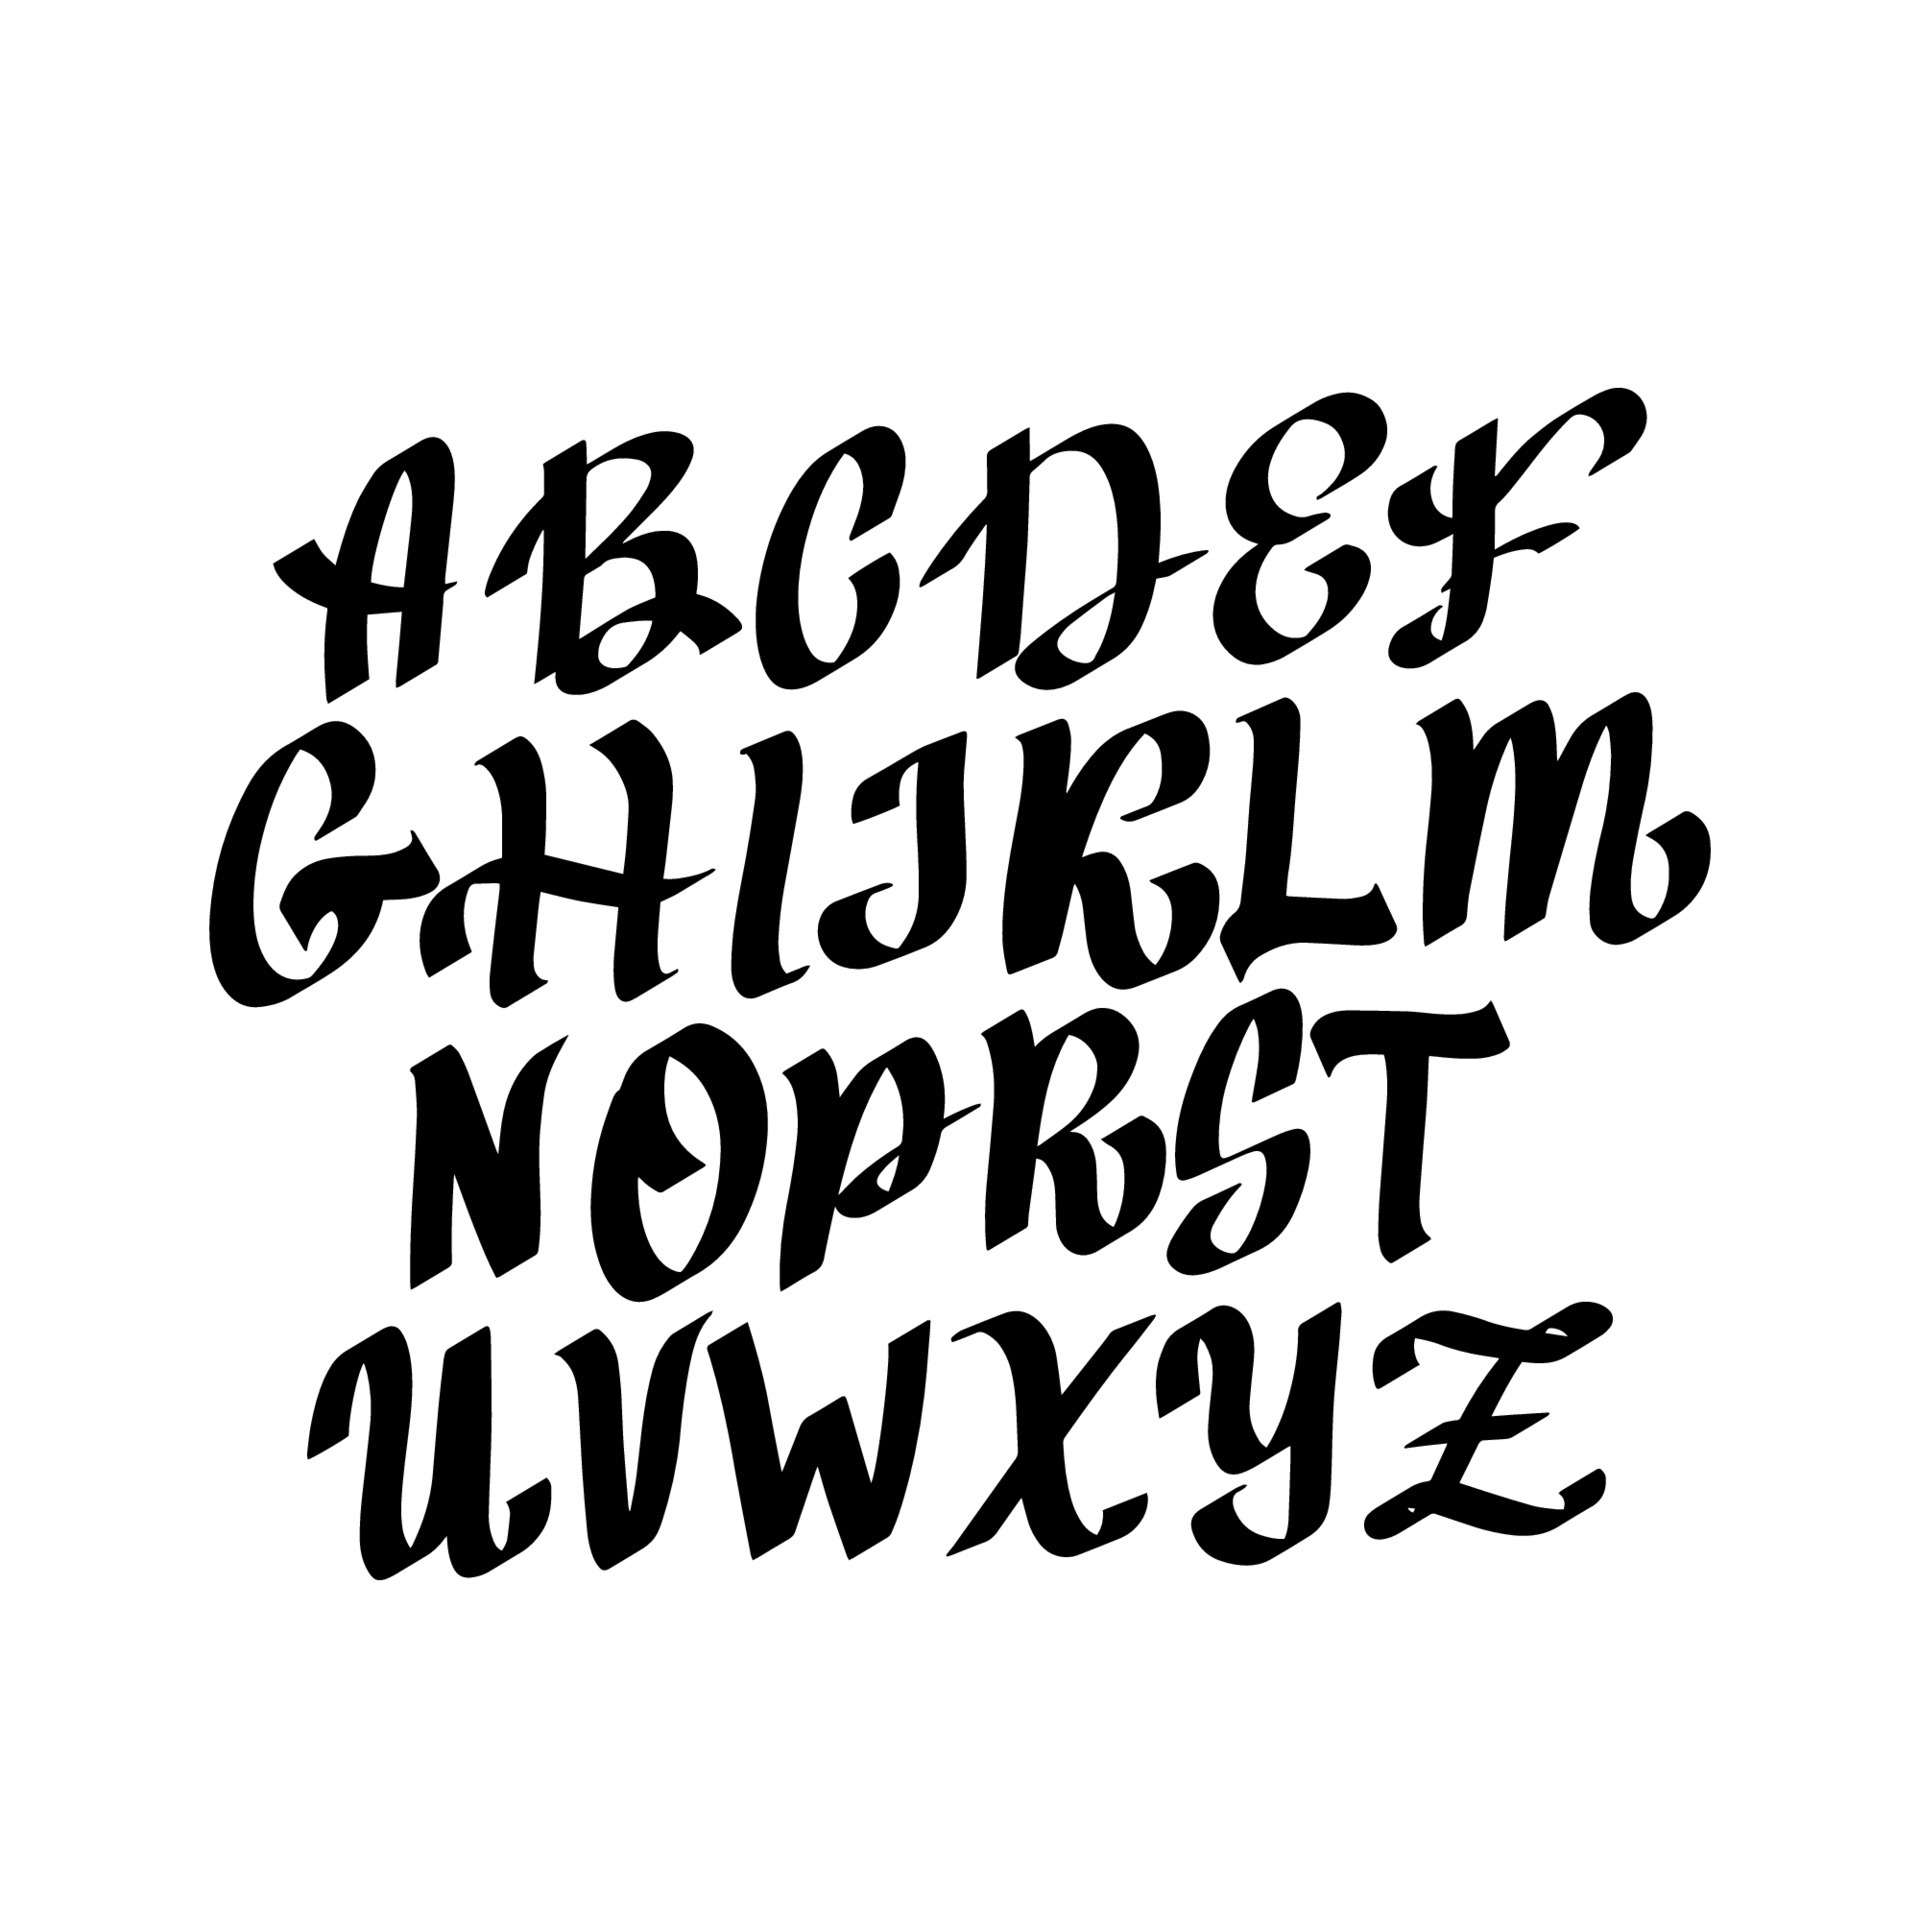 Gothic Alphabet: Từ A đến Z, bảng chữ cái Gothic là một trong những điều tuyệt vời nhất bạn sẽ được thấy trong ngày hôm nay. Đặc biệt, bạn sẽ được chiêm ngưỡng các ký tự độc đáo của phong cách thiết kế này. Đừng bỏ qua cơ hội thưởng thức nó!